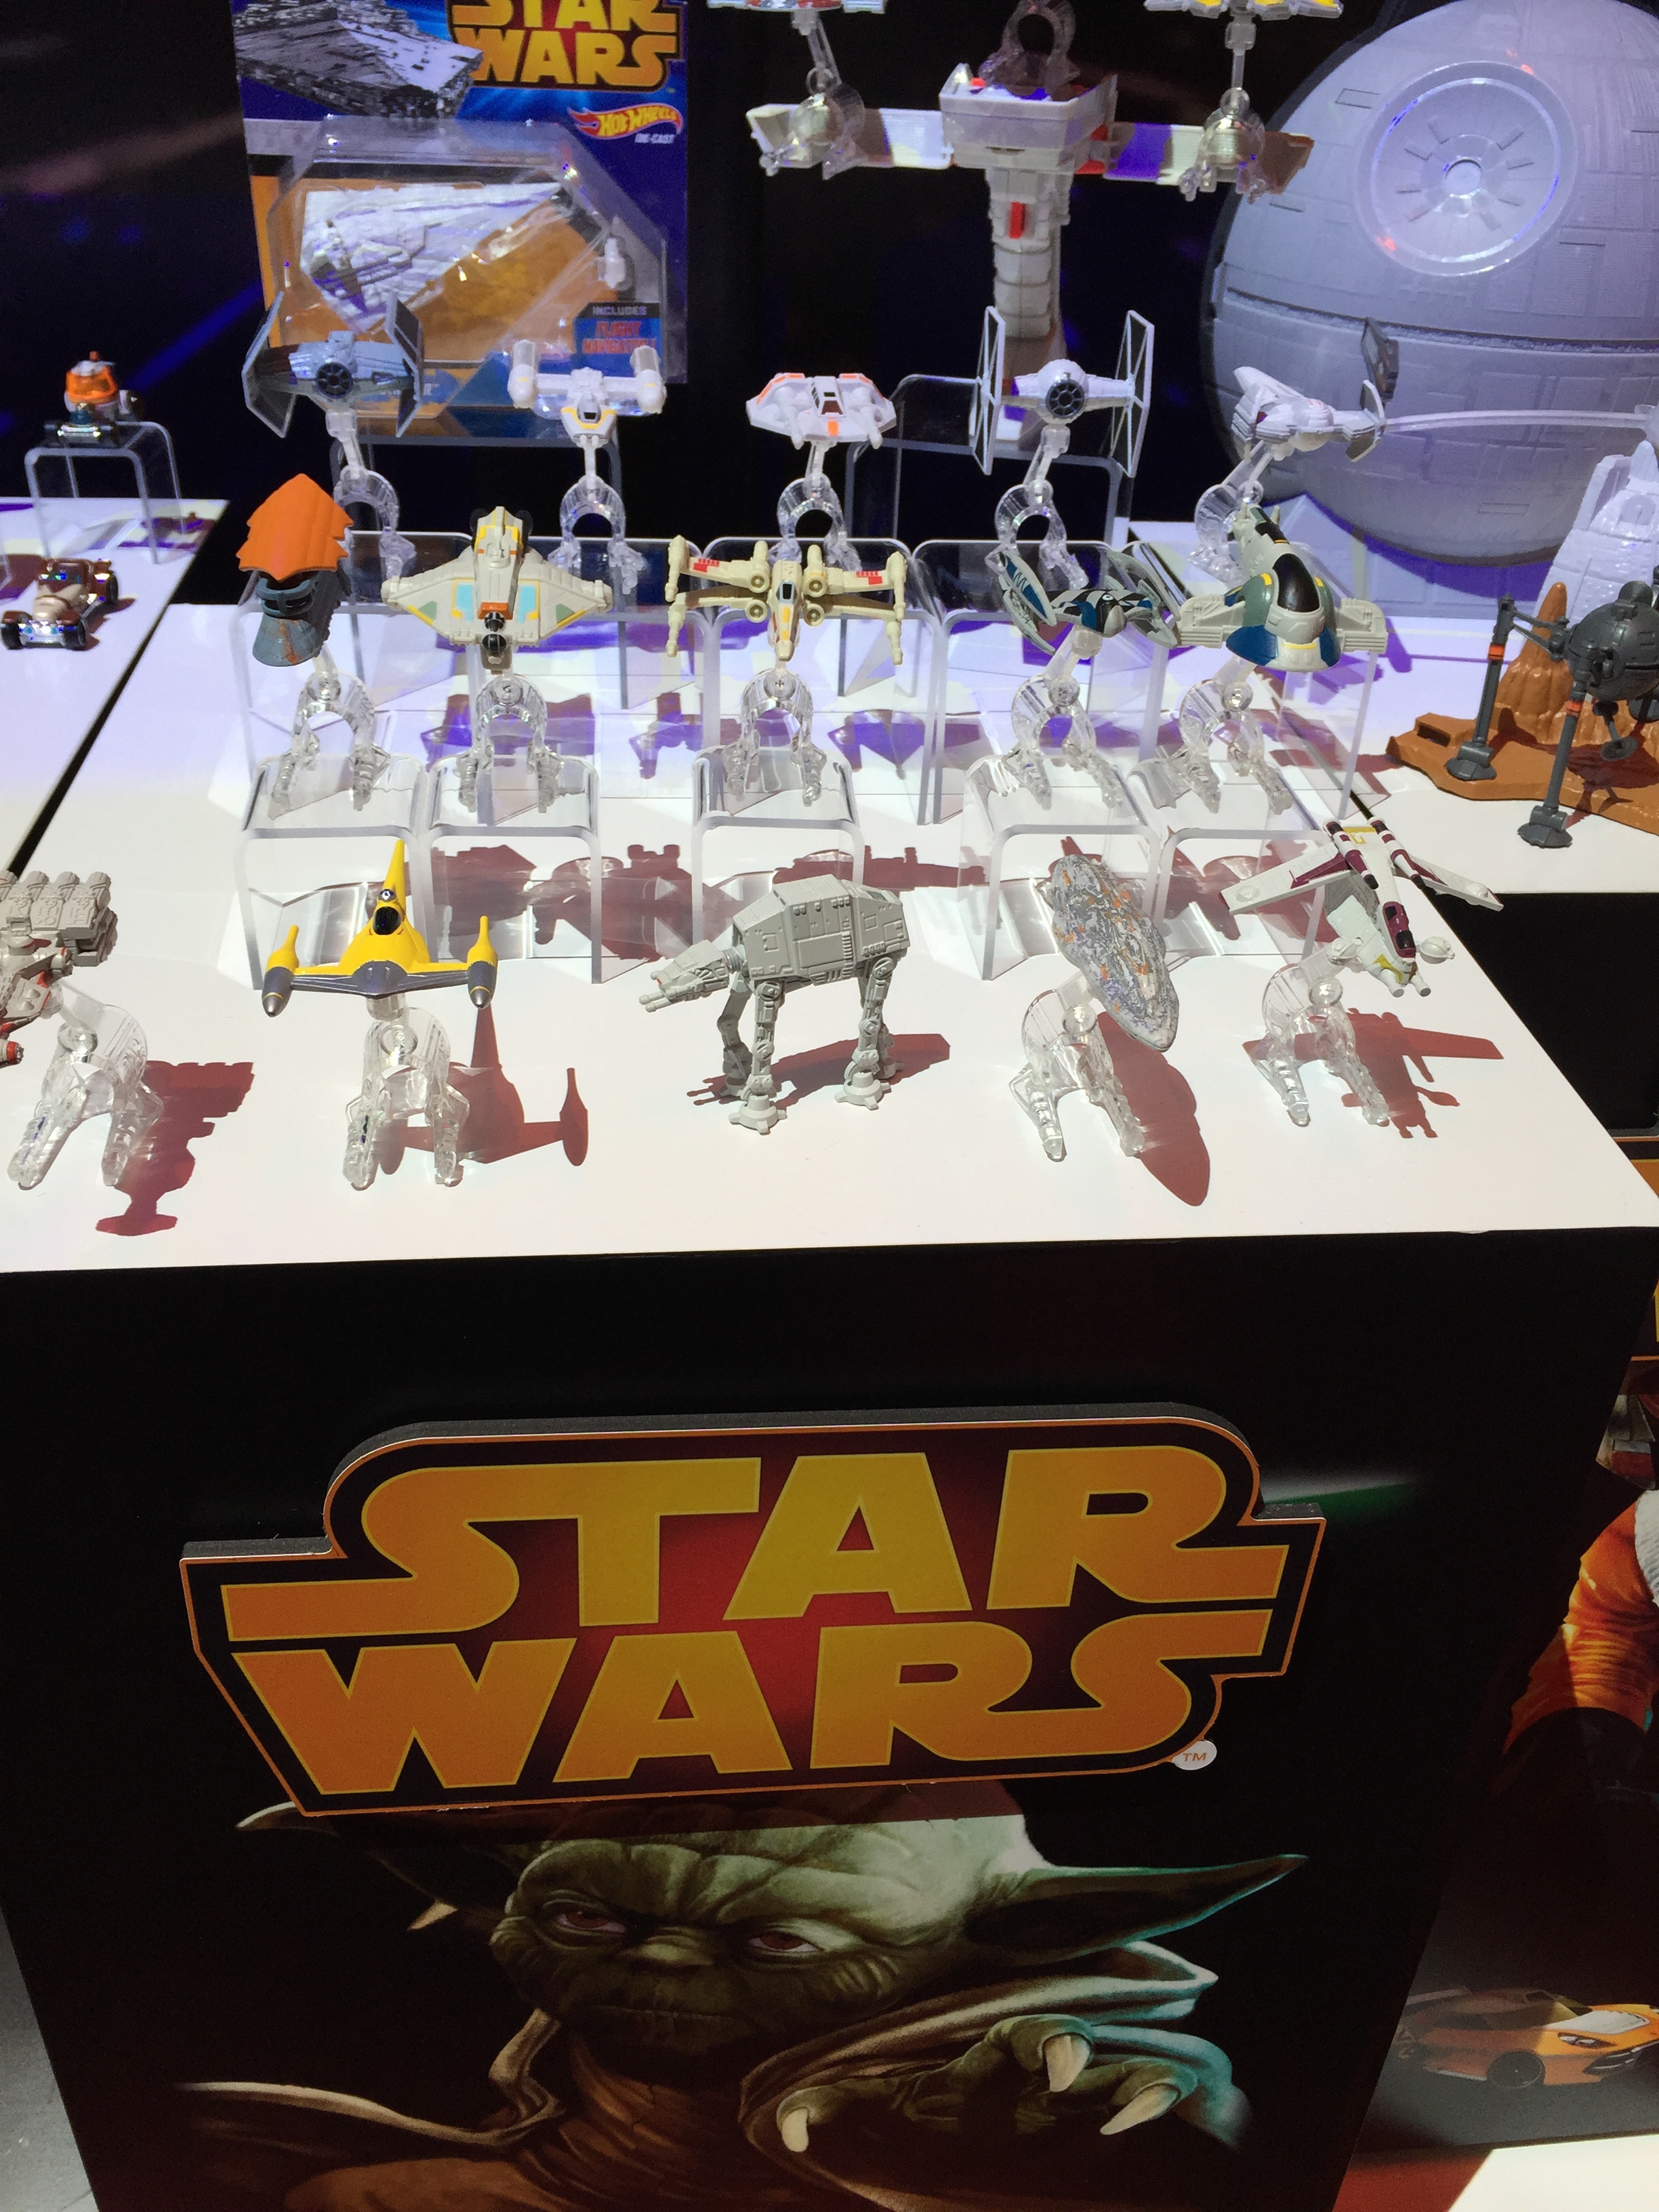 2015 star wars figures